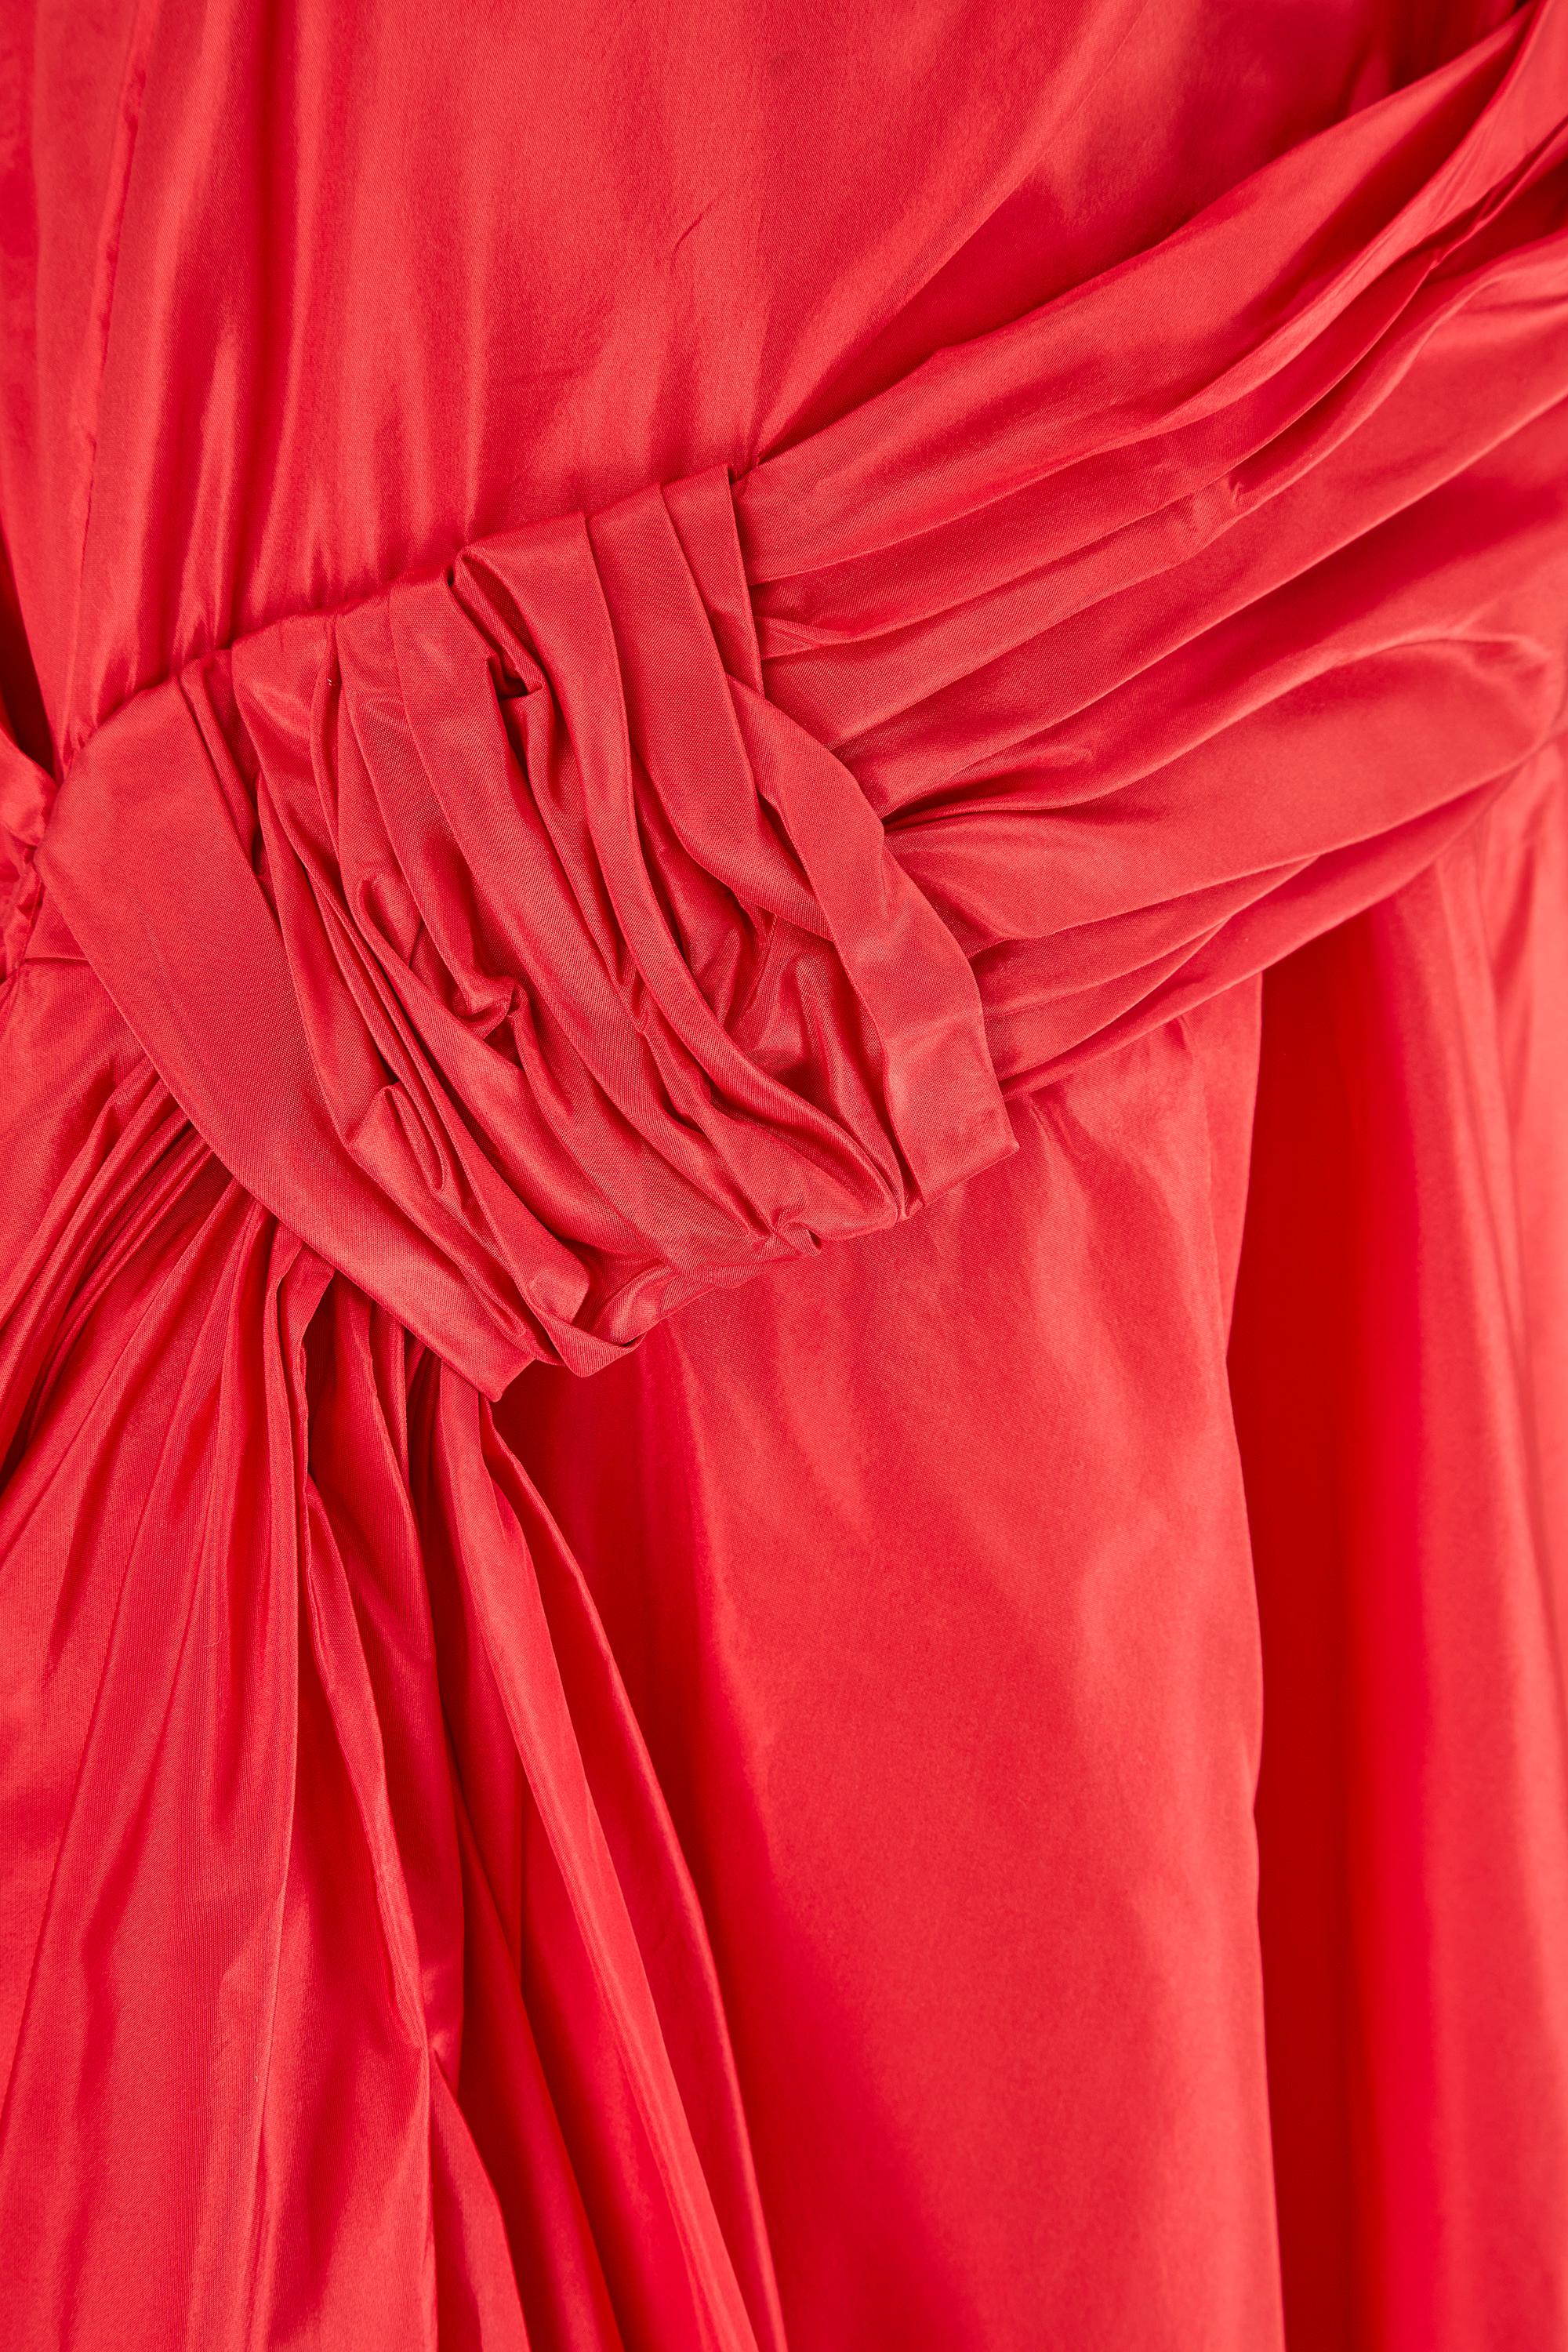 red taffeta dress